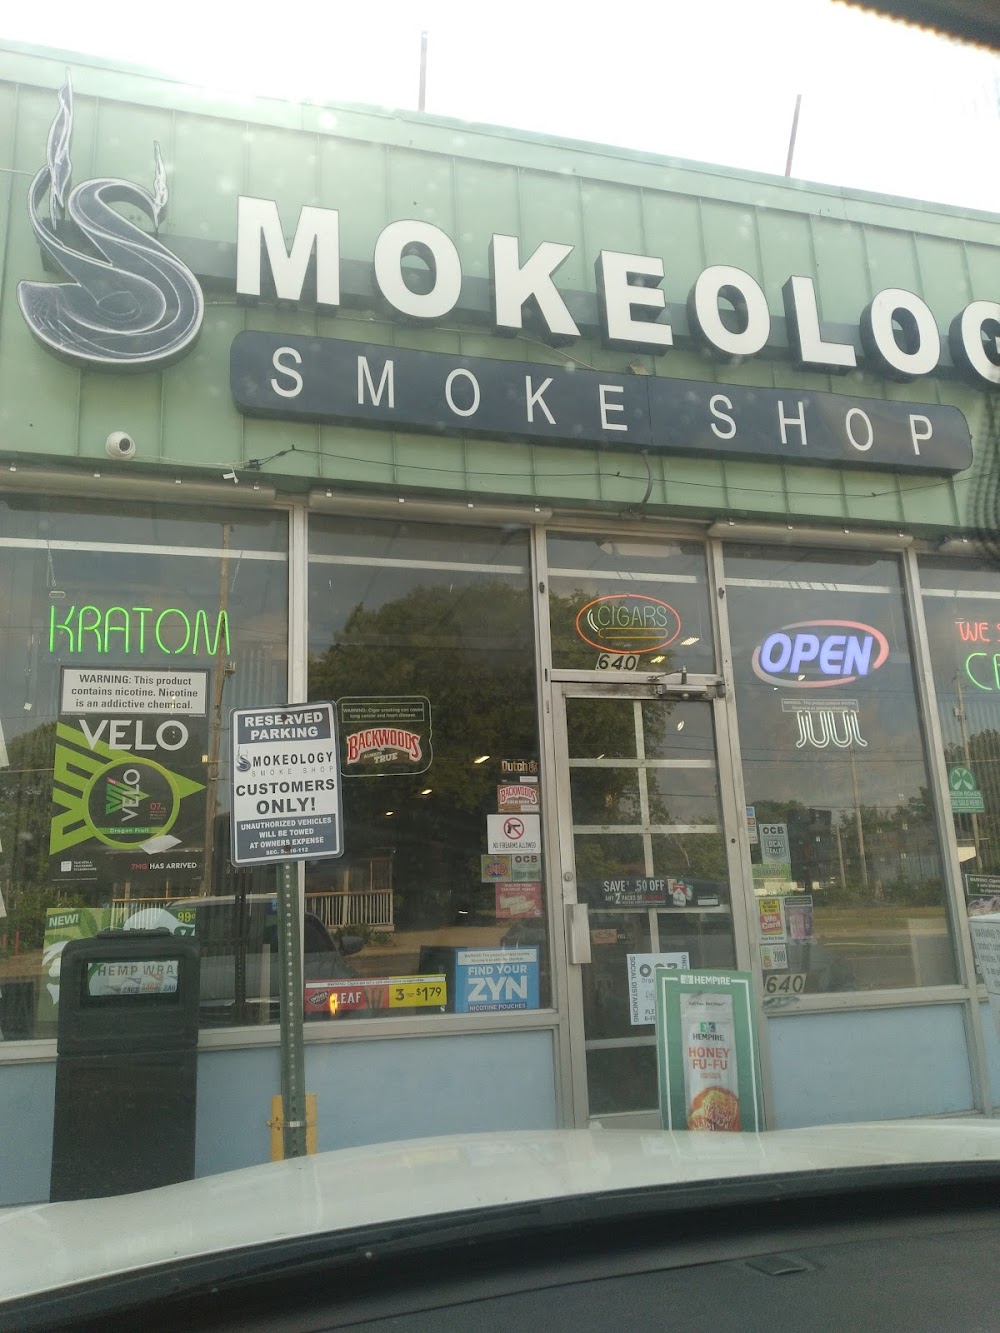 Smokeology Smoke Shop